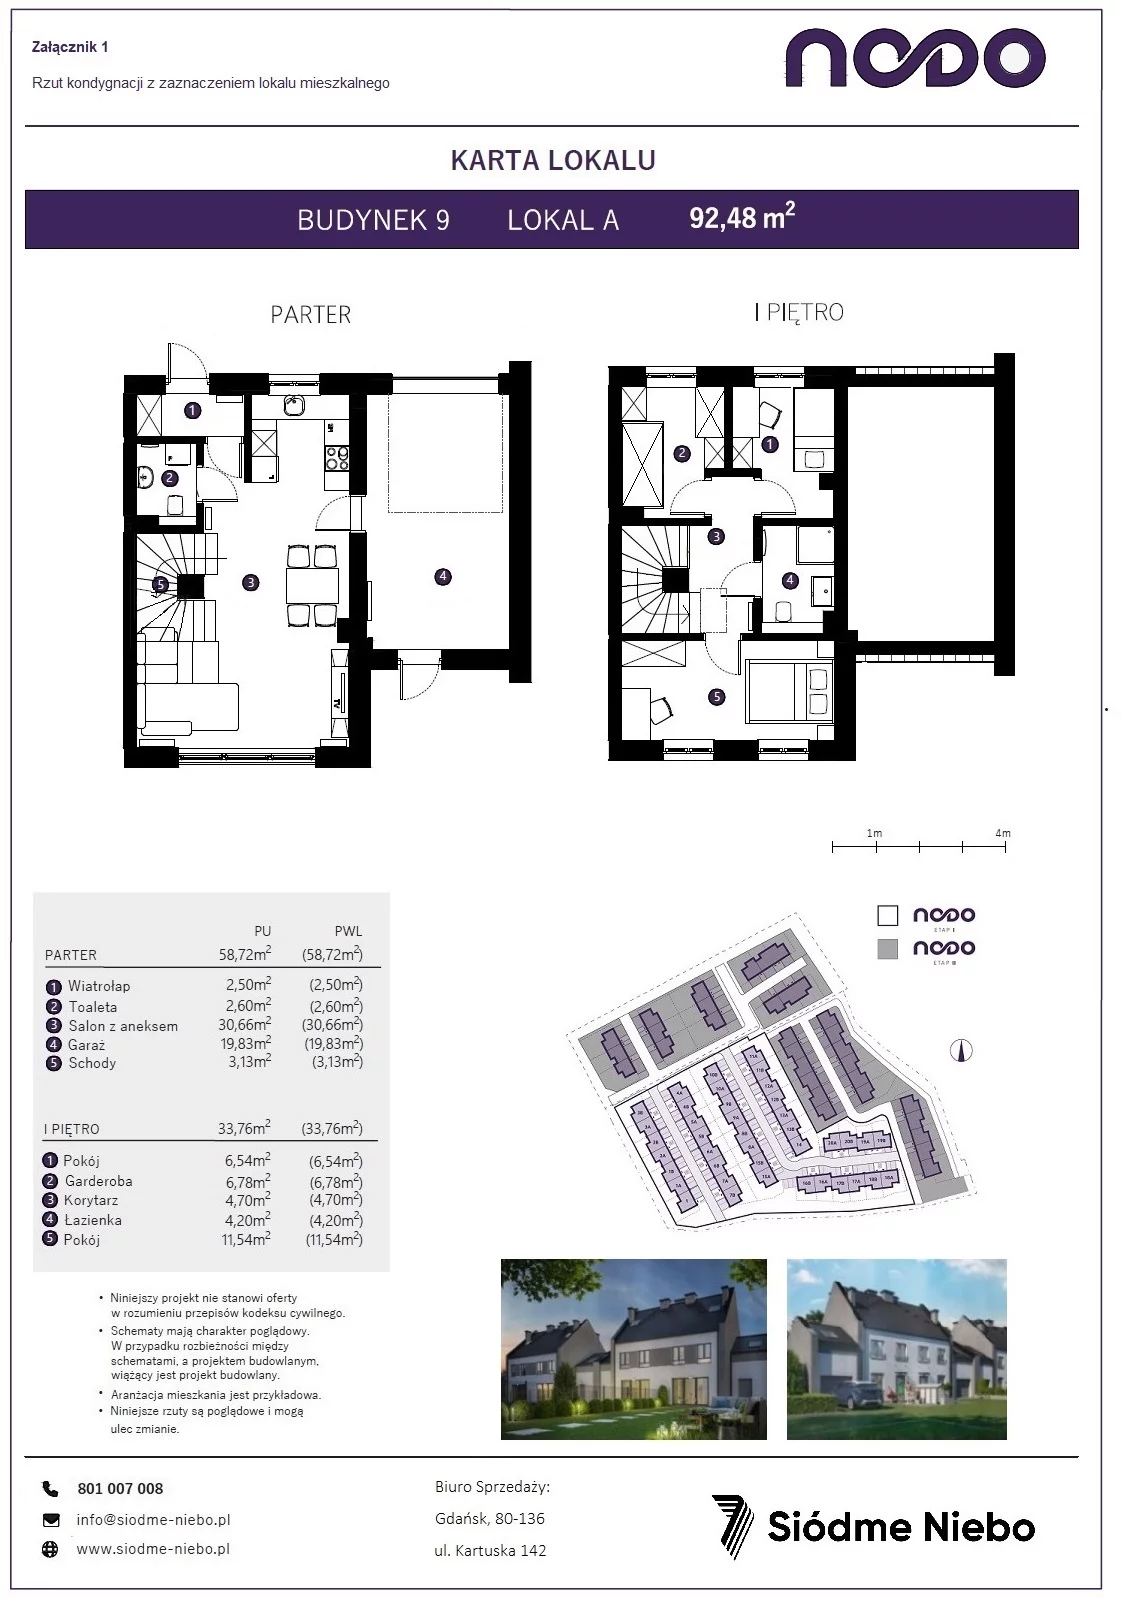 Mieszkanie 92,48 m², parter, oferta nr 9A, Osiedle Nodo, Gdańsk, Jasień, ul. Lubowidzka